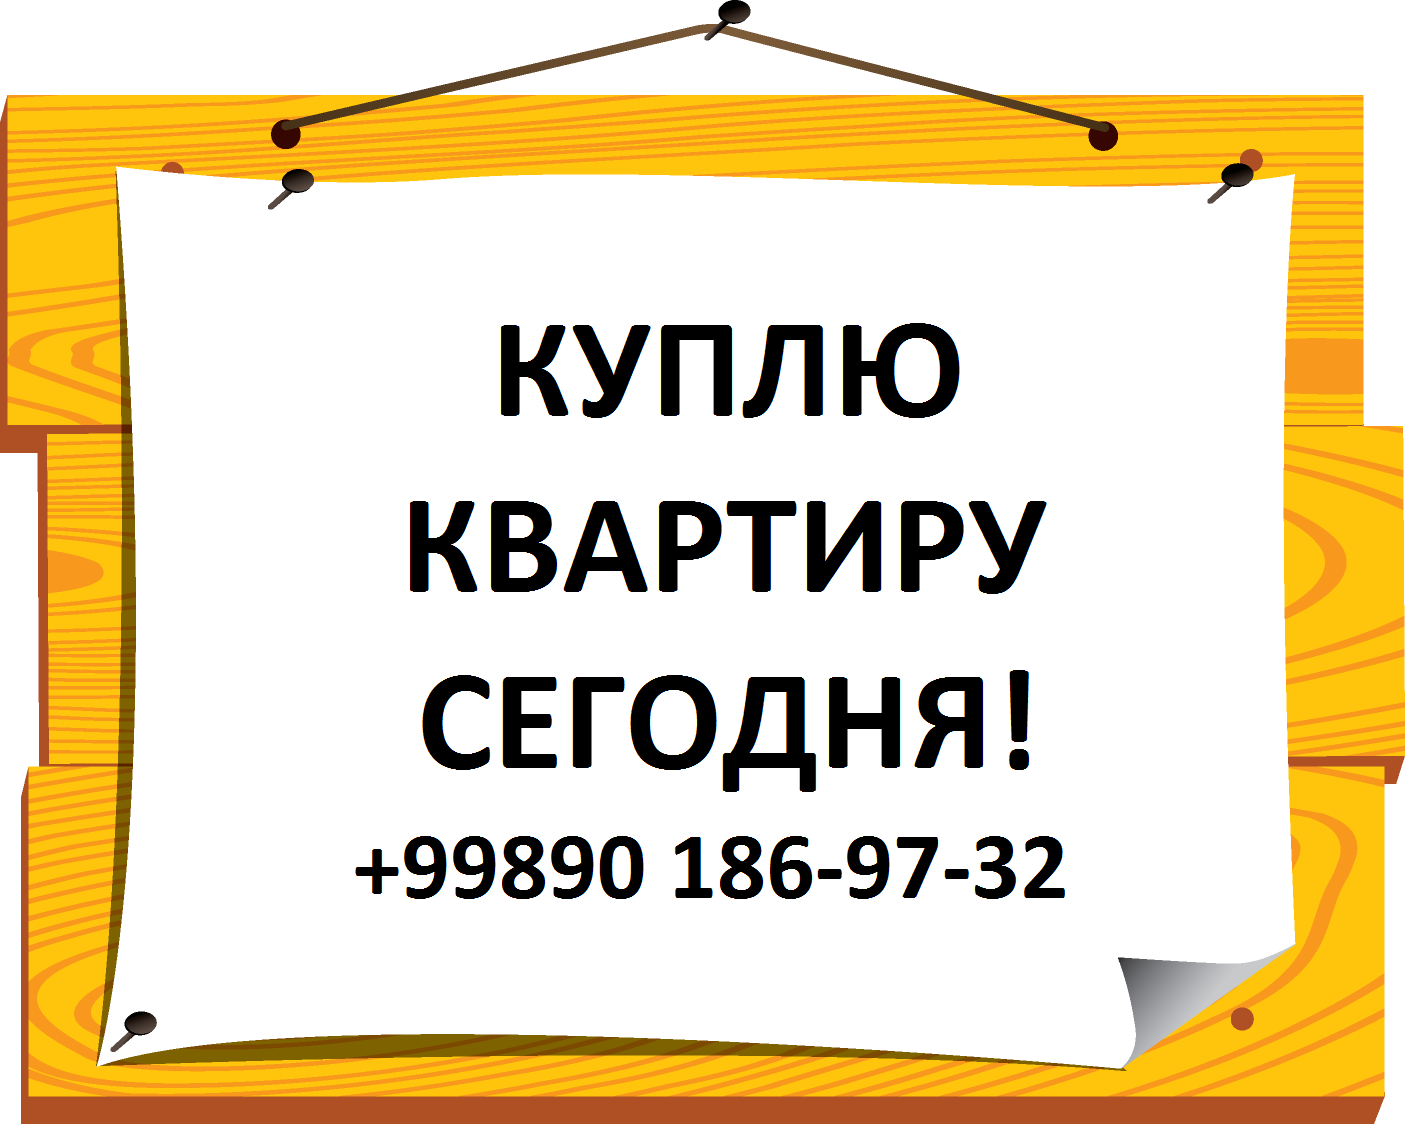 1616966550_19-p-fon-dlya-obyavleniya-19-kopiya-kopiya